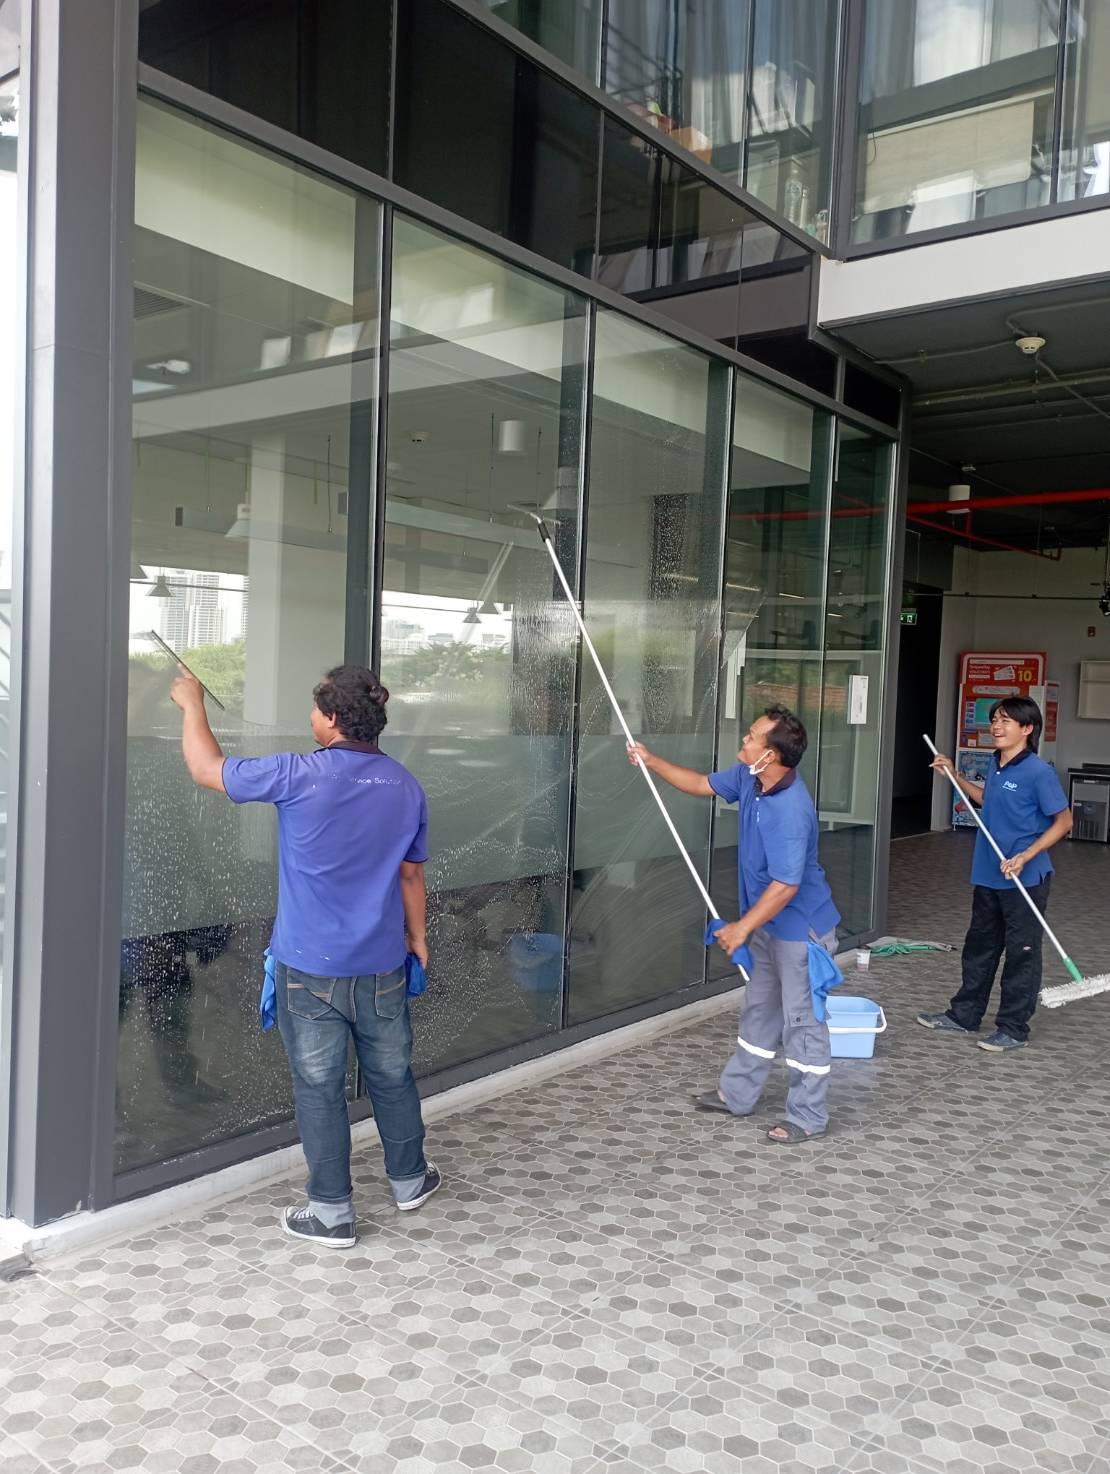 บริการทำความสะอาด เช็ดกระจก บริษัท หาญเอ็นจิเนียริ่ง จำกัด